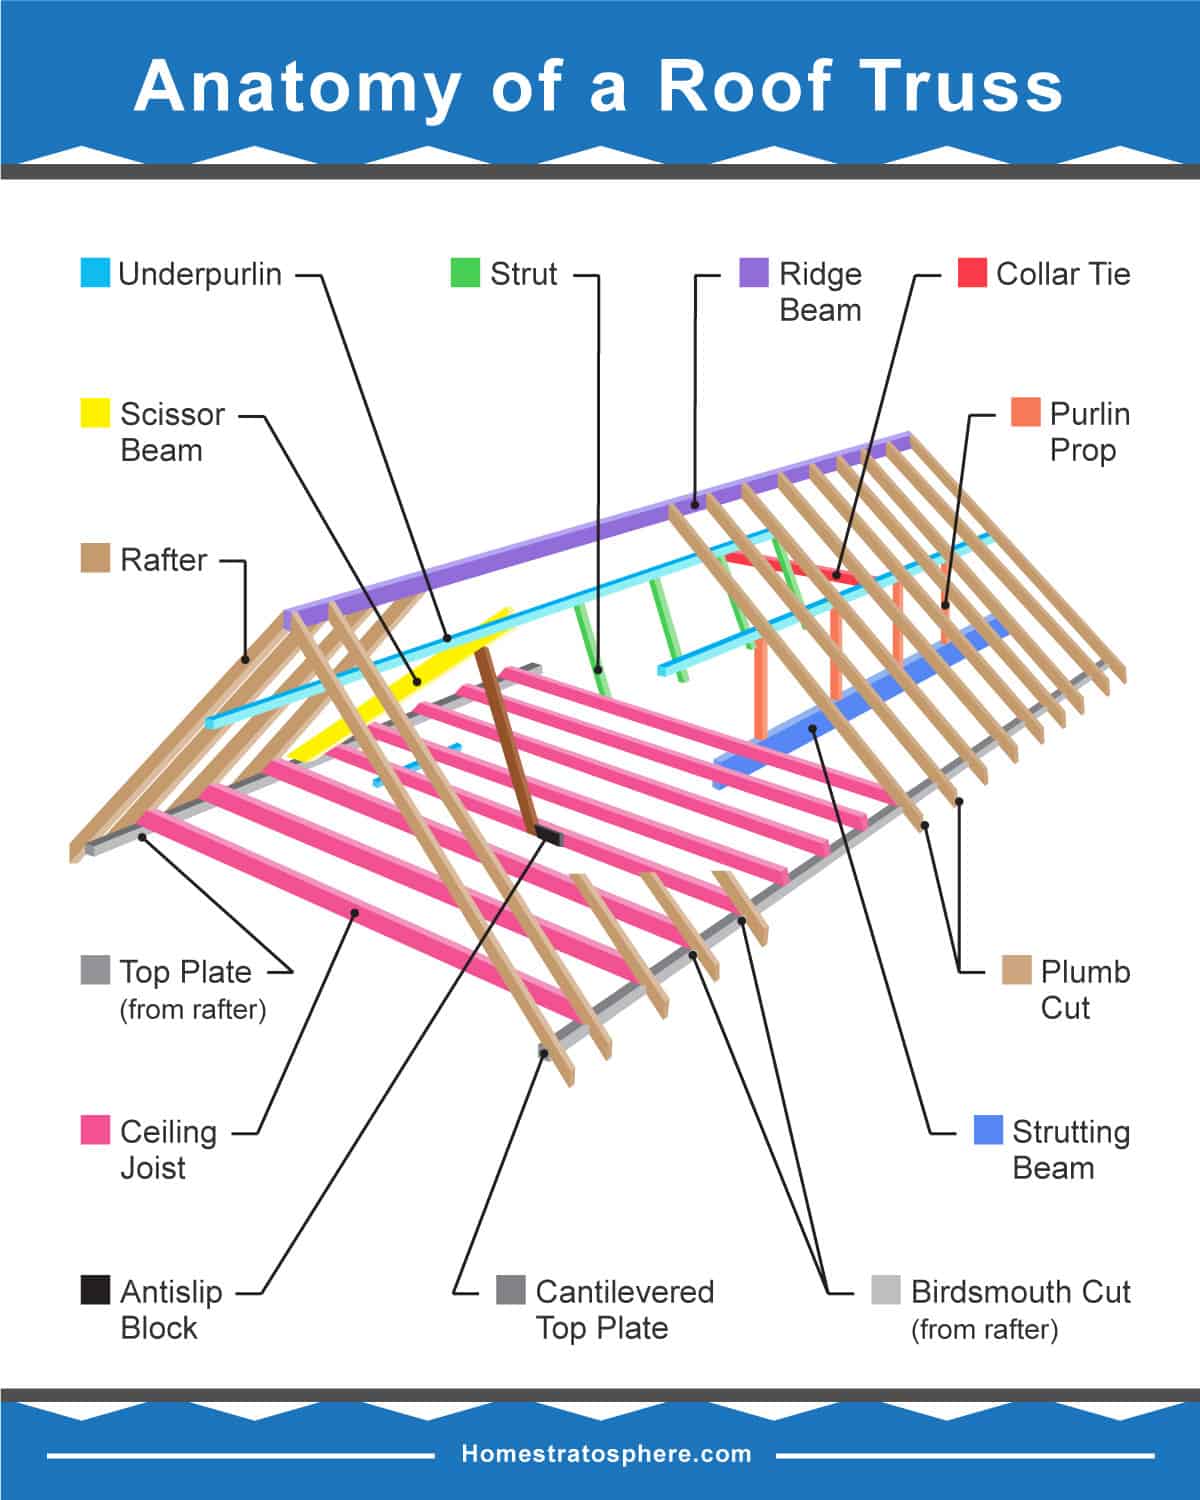 说明屋顶桁架的许多部分的图表